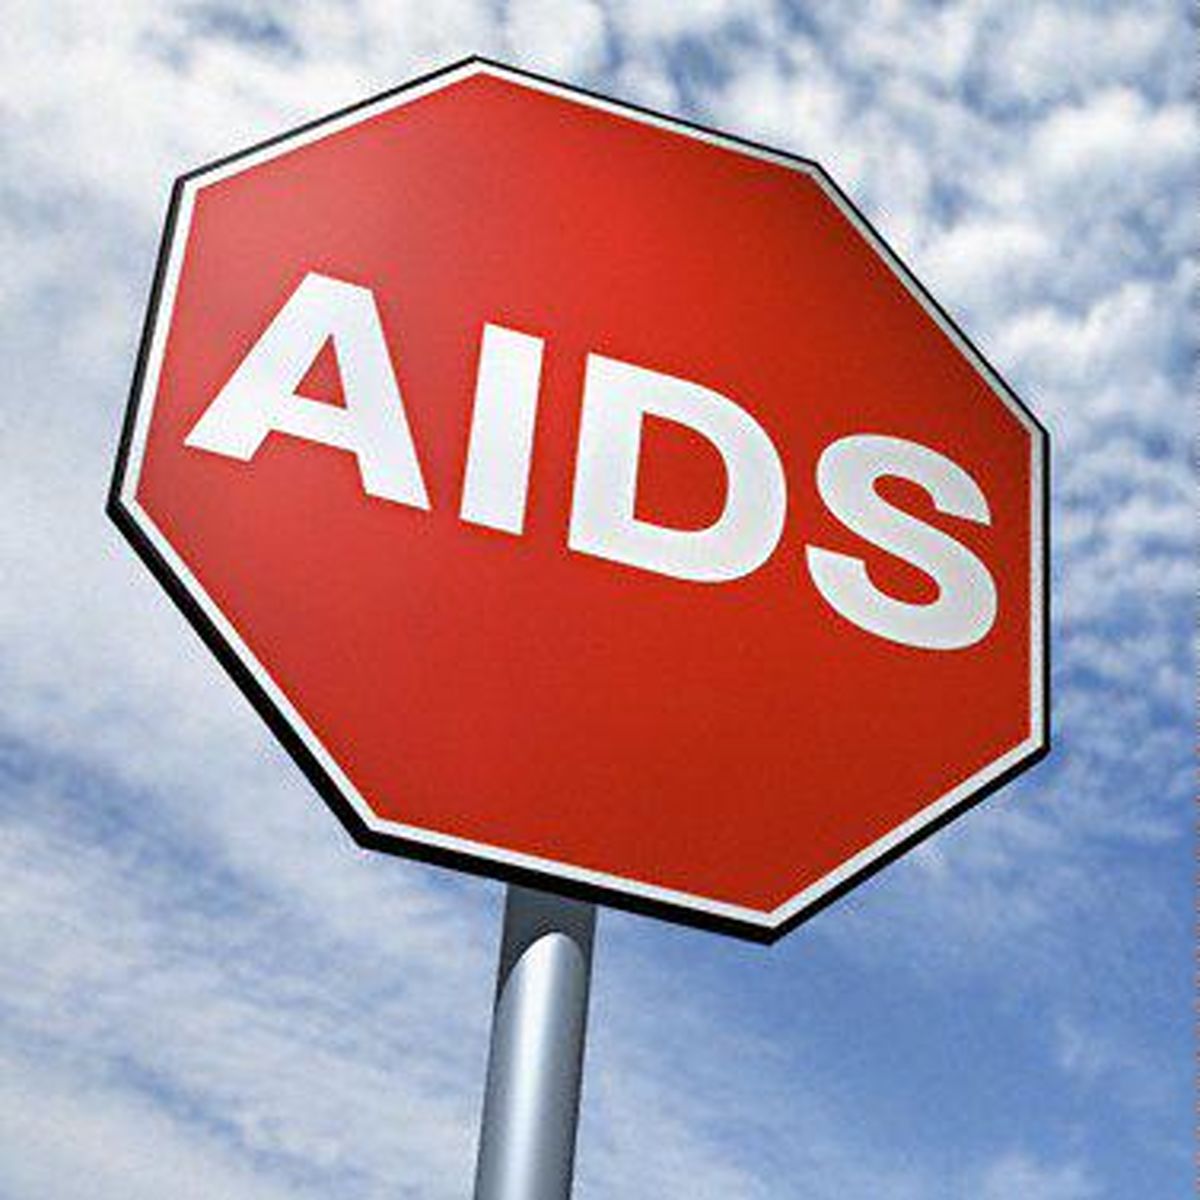 ۲.۵ میلیون نفر به ویروس HIV در سال ۲۰۱۵ مبتلا شدند